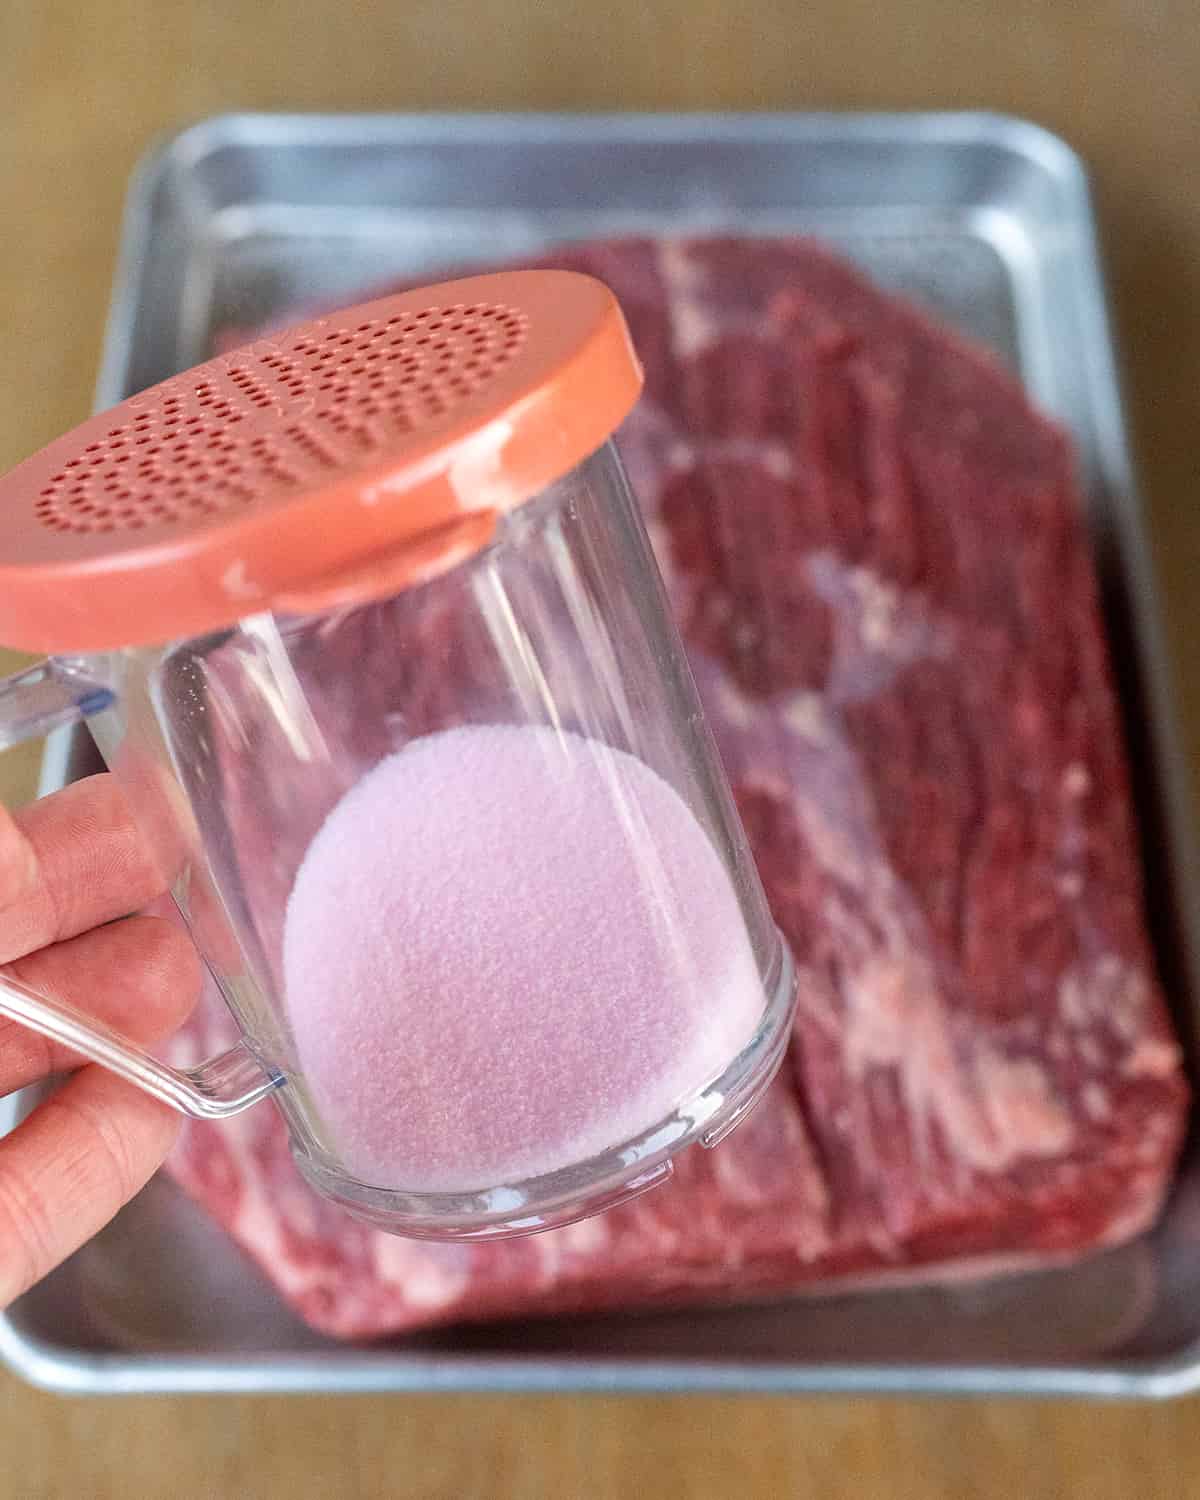 Shaker of pink curing salt over brisket.